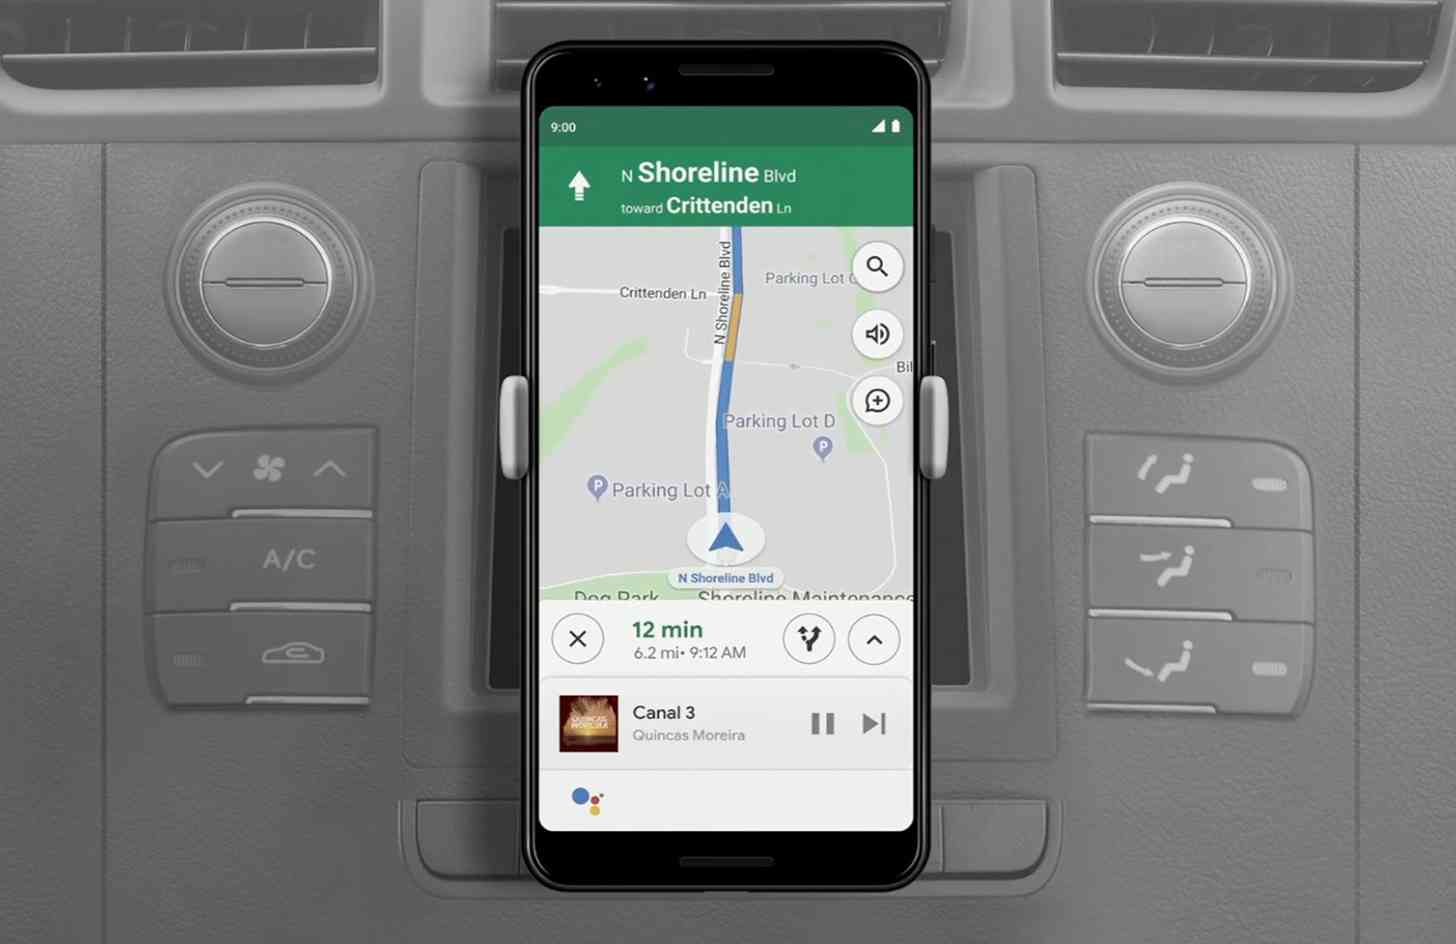 Google Assistant Driving Mode navigation